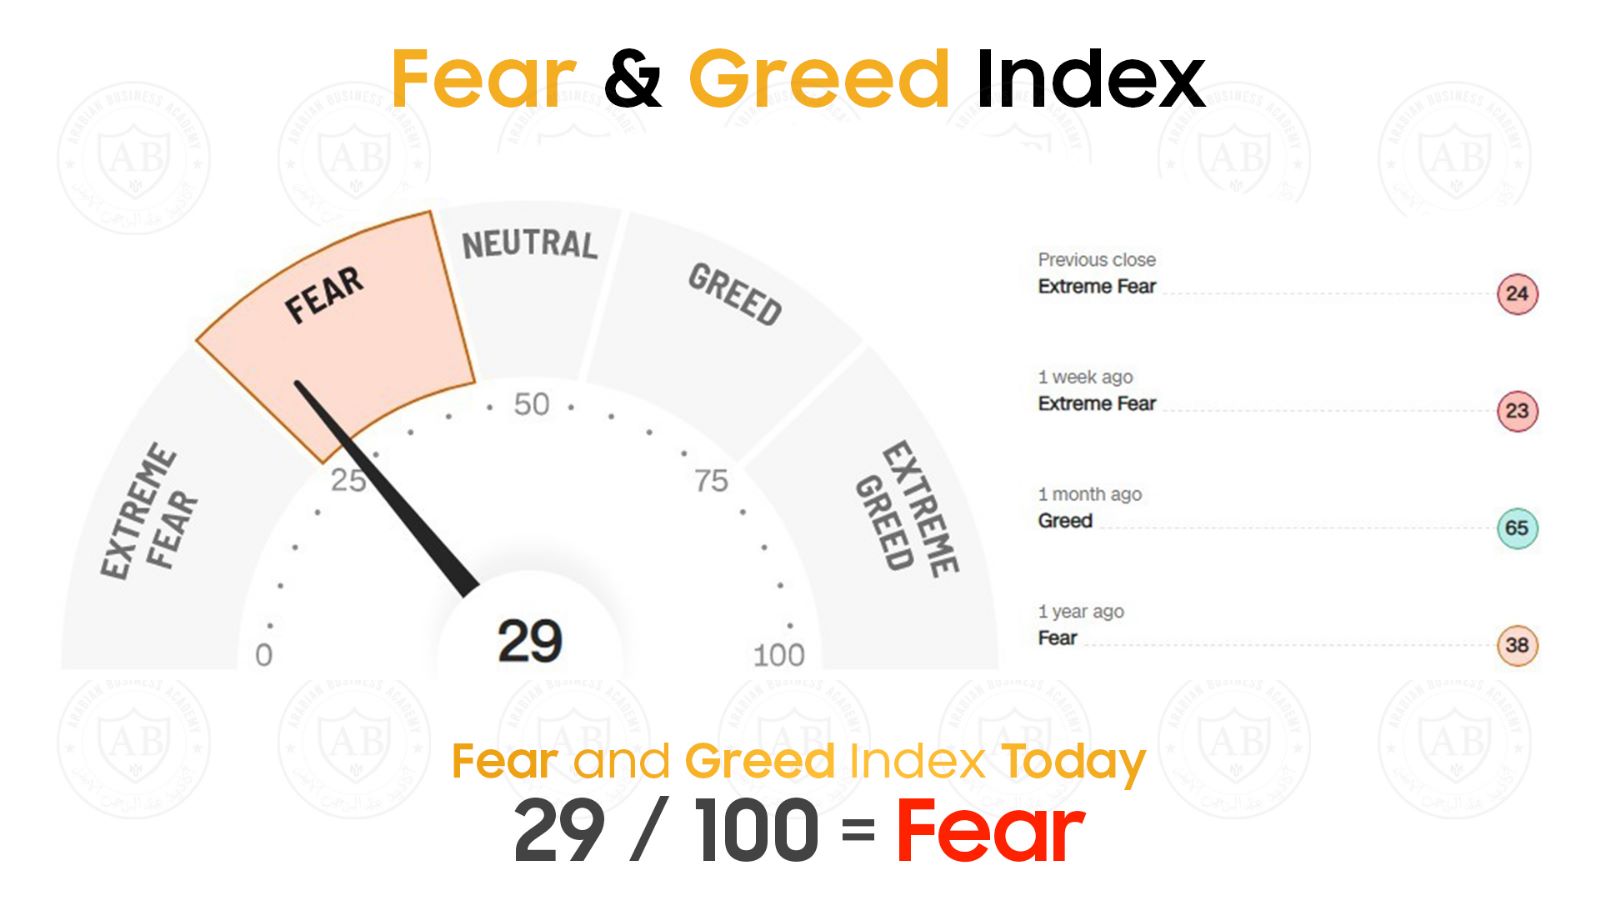 مؤشر  Fear and Greed  في أسواق الاسهم يشير  الى حالة خوف  29/100  لجلسة اليوم